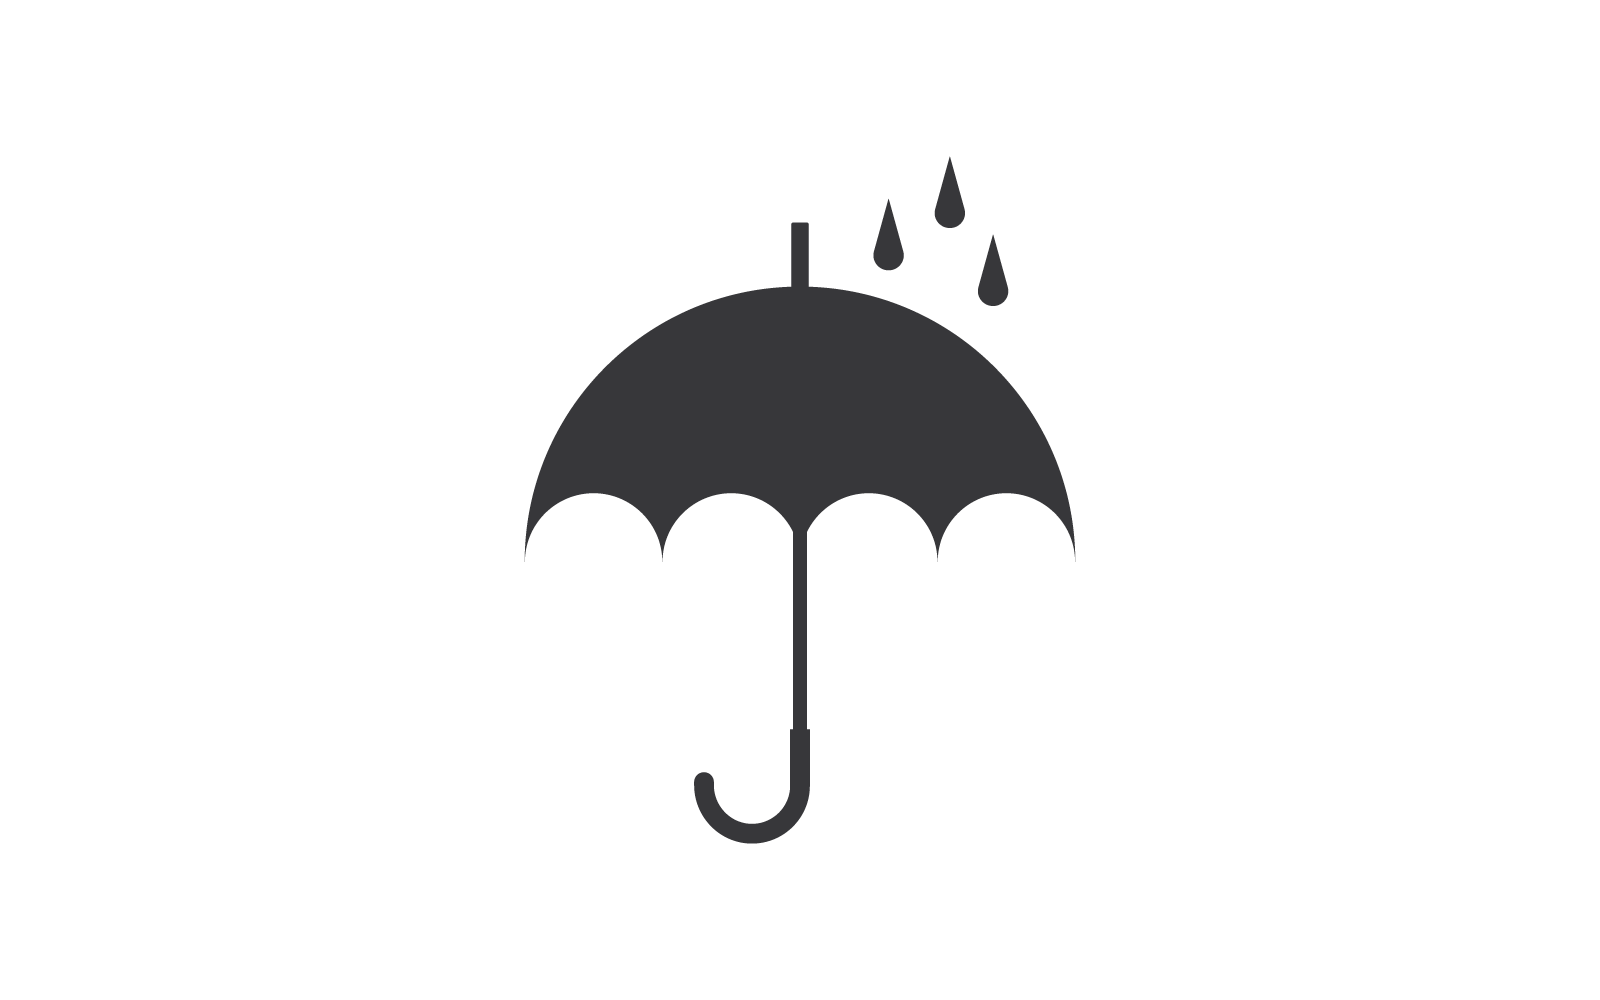 Deštník ilustrace logo koncept vektorové šablony